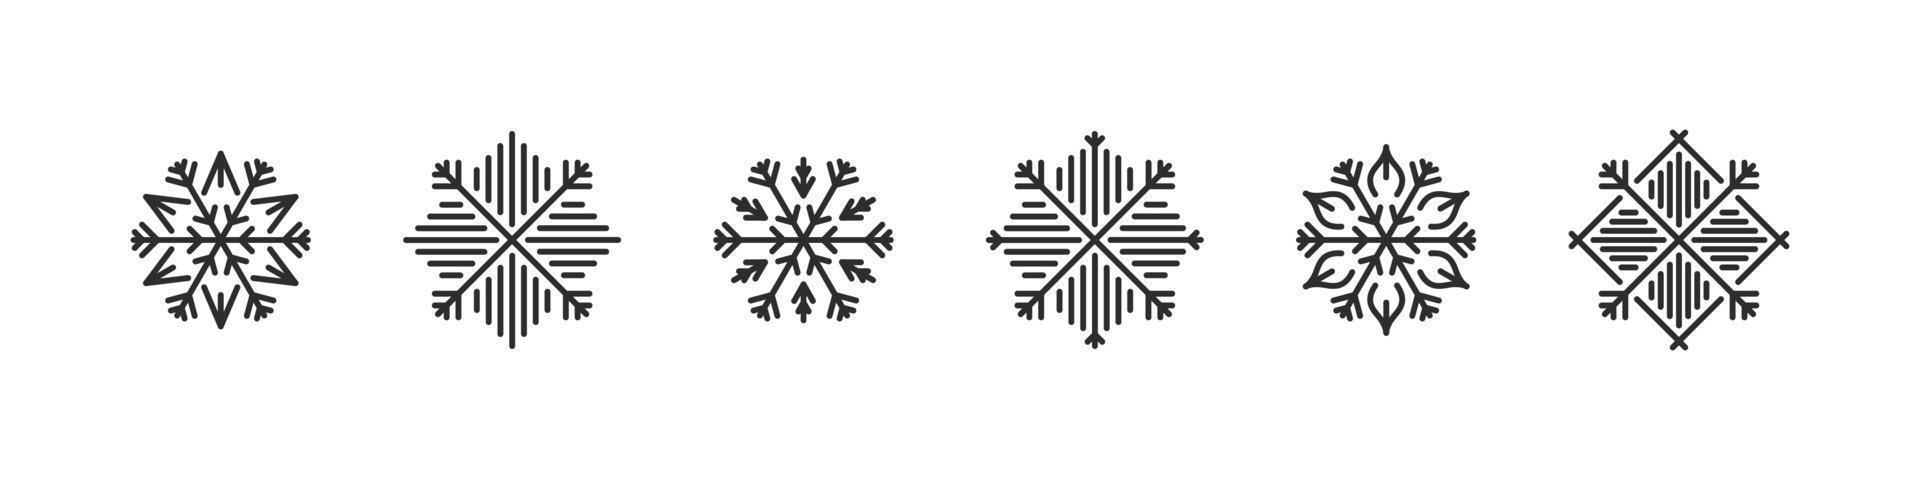 iconos de copos de nieve. iconos navideños modernos. signos de navidad. ornamento conceptual de los copos de nieve. ilustración vectorial vector